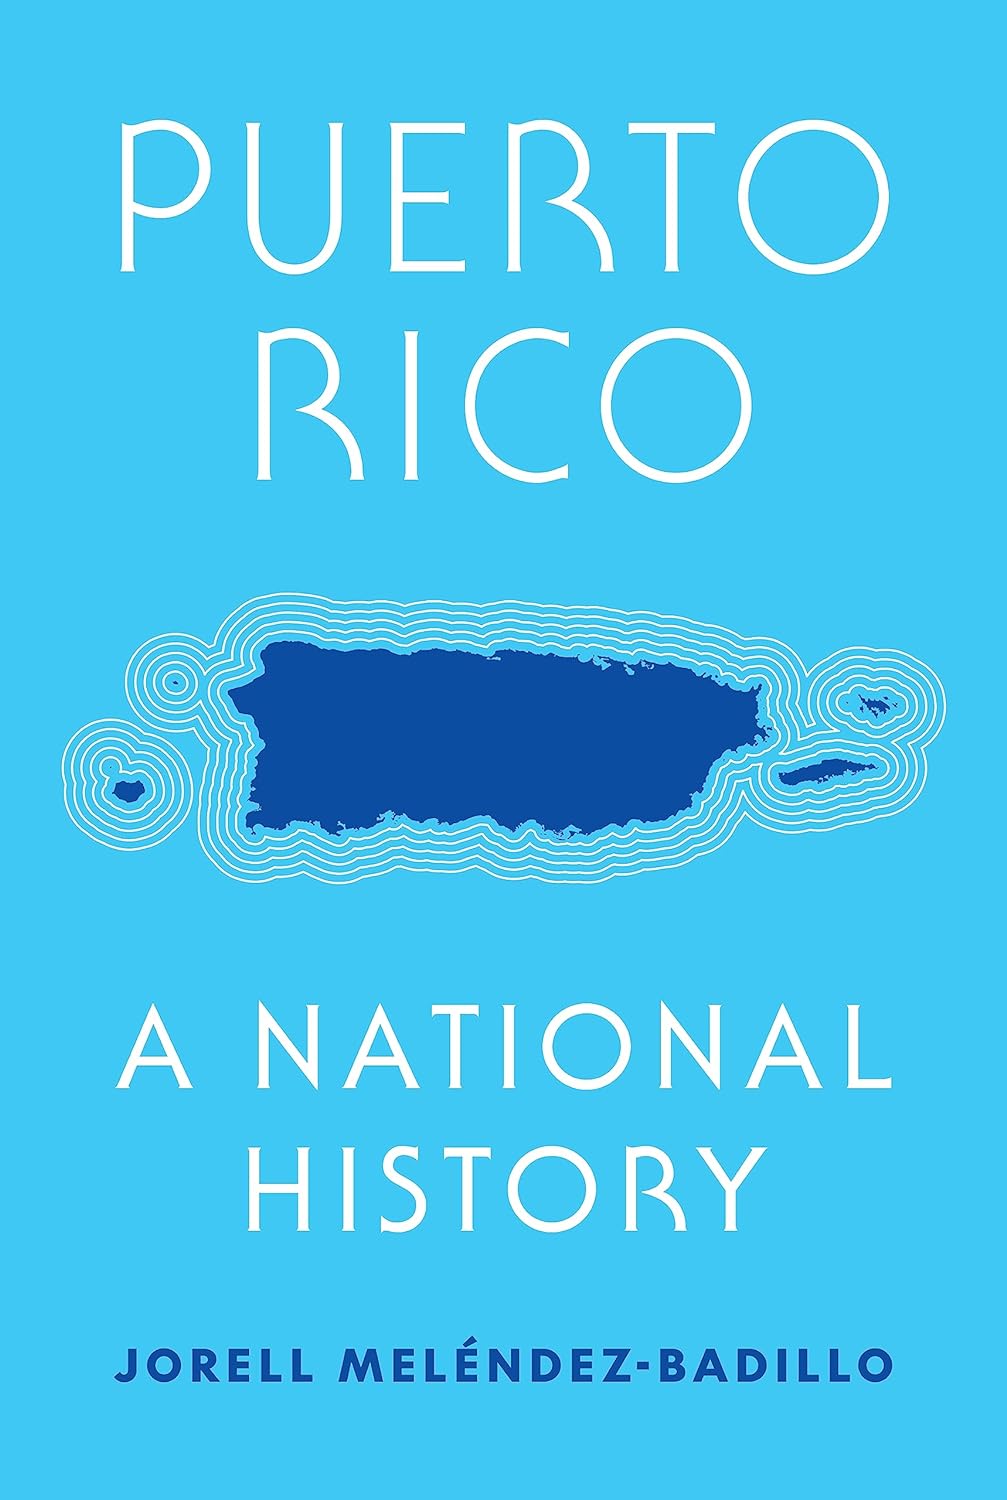 PUERTO RICO A NATIONAL HISTORY - Jorell Meléndez-Badillo